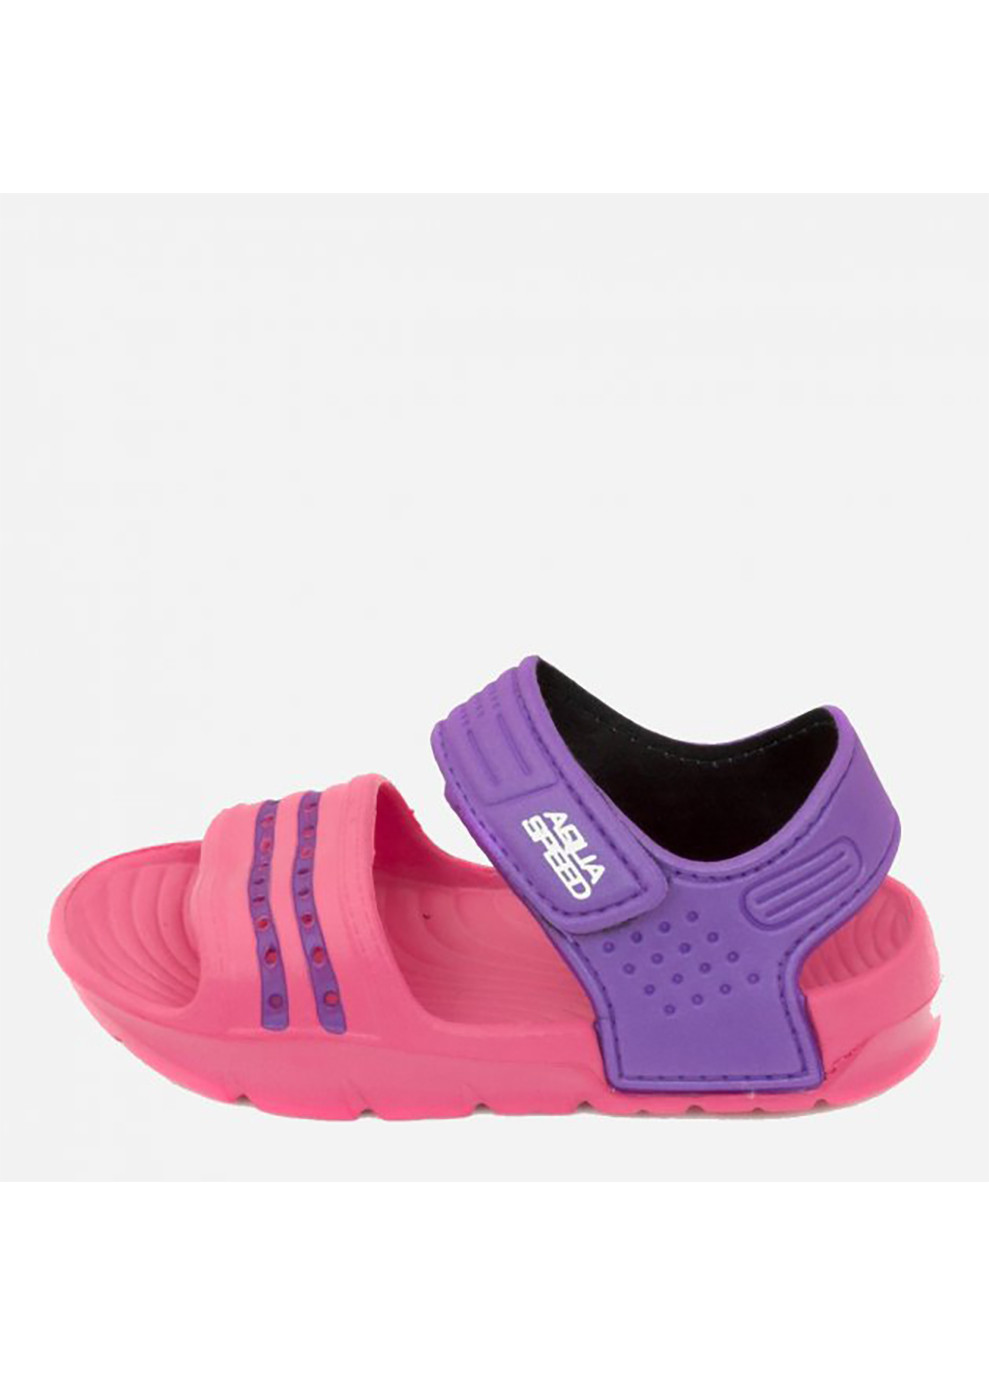 Розовые спортивные сандали noli 6957 розовый, фиолетовый Aqua Speed